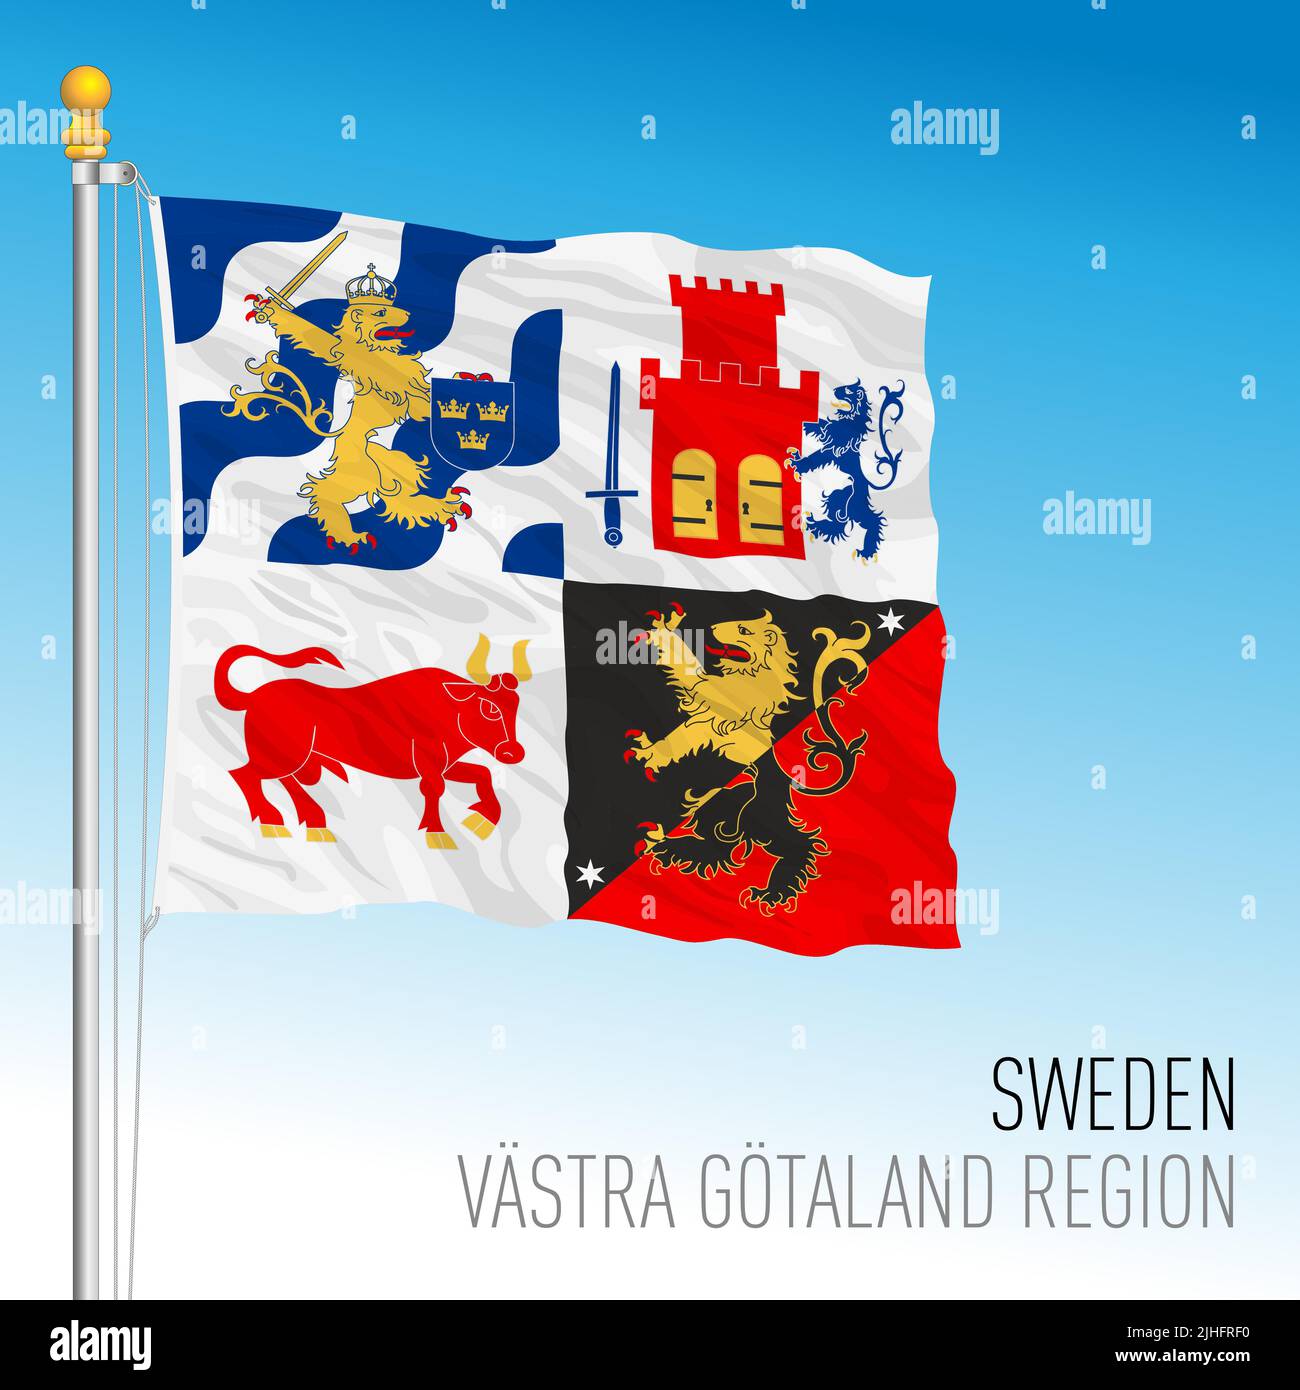 Bandera regional del condado de Vastra Gotland, Reino de Suecia, ilustración de vectores Ilustración del Vector